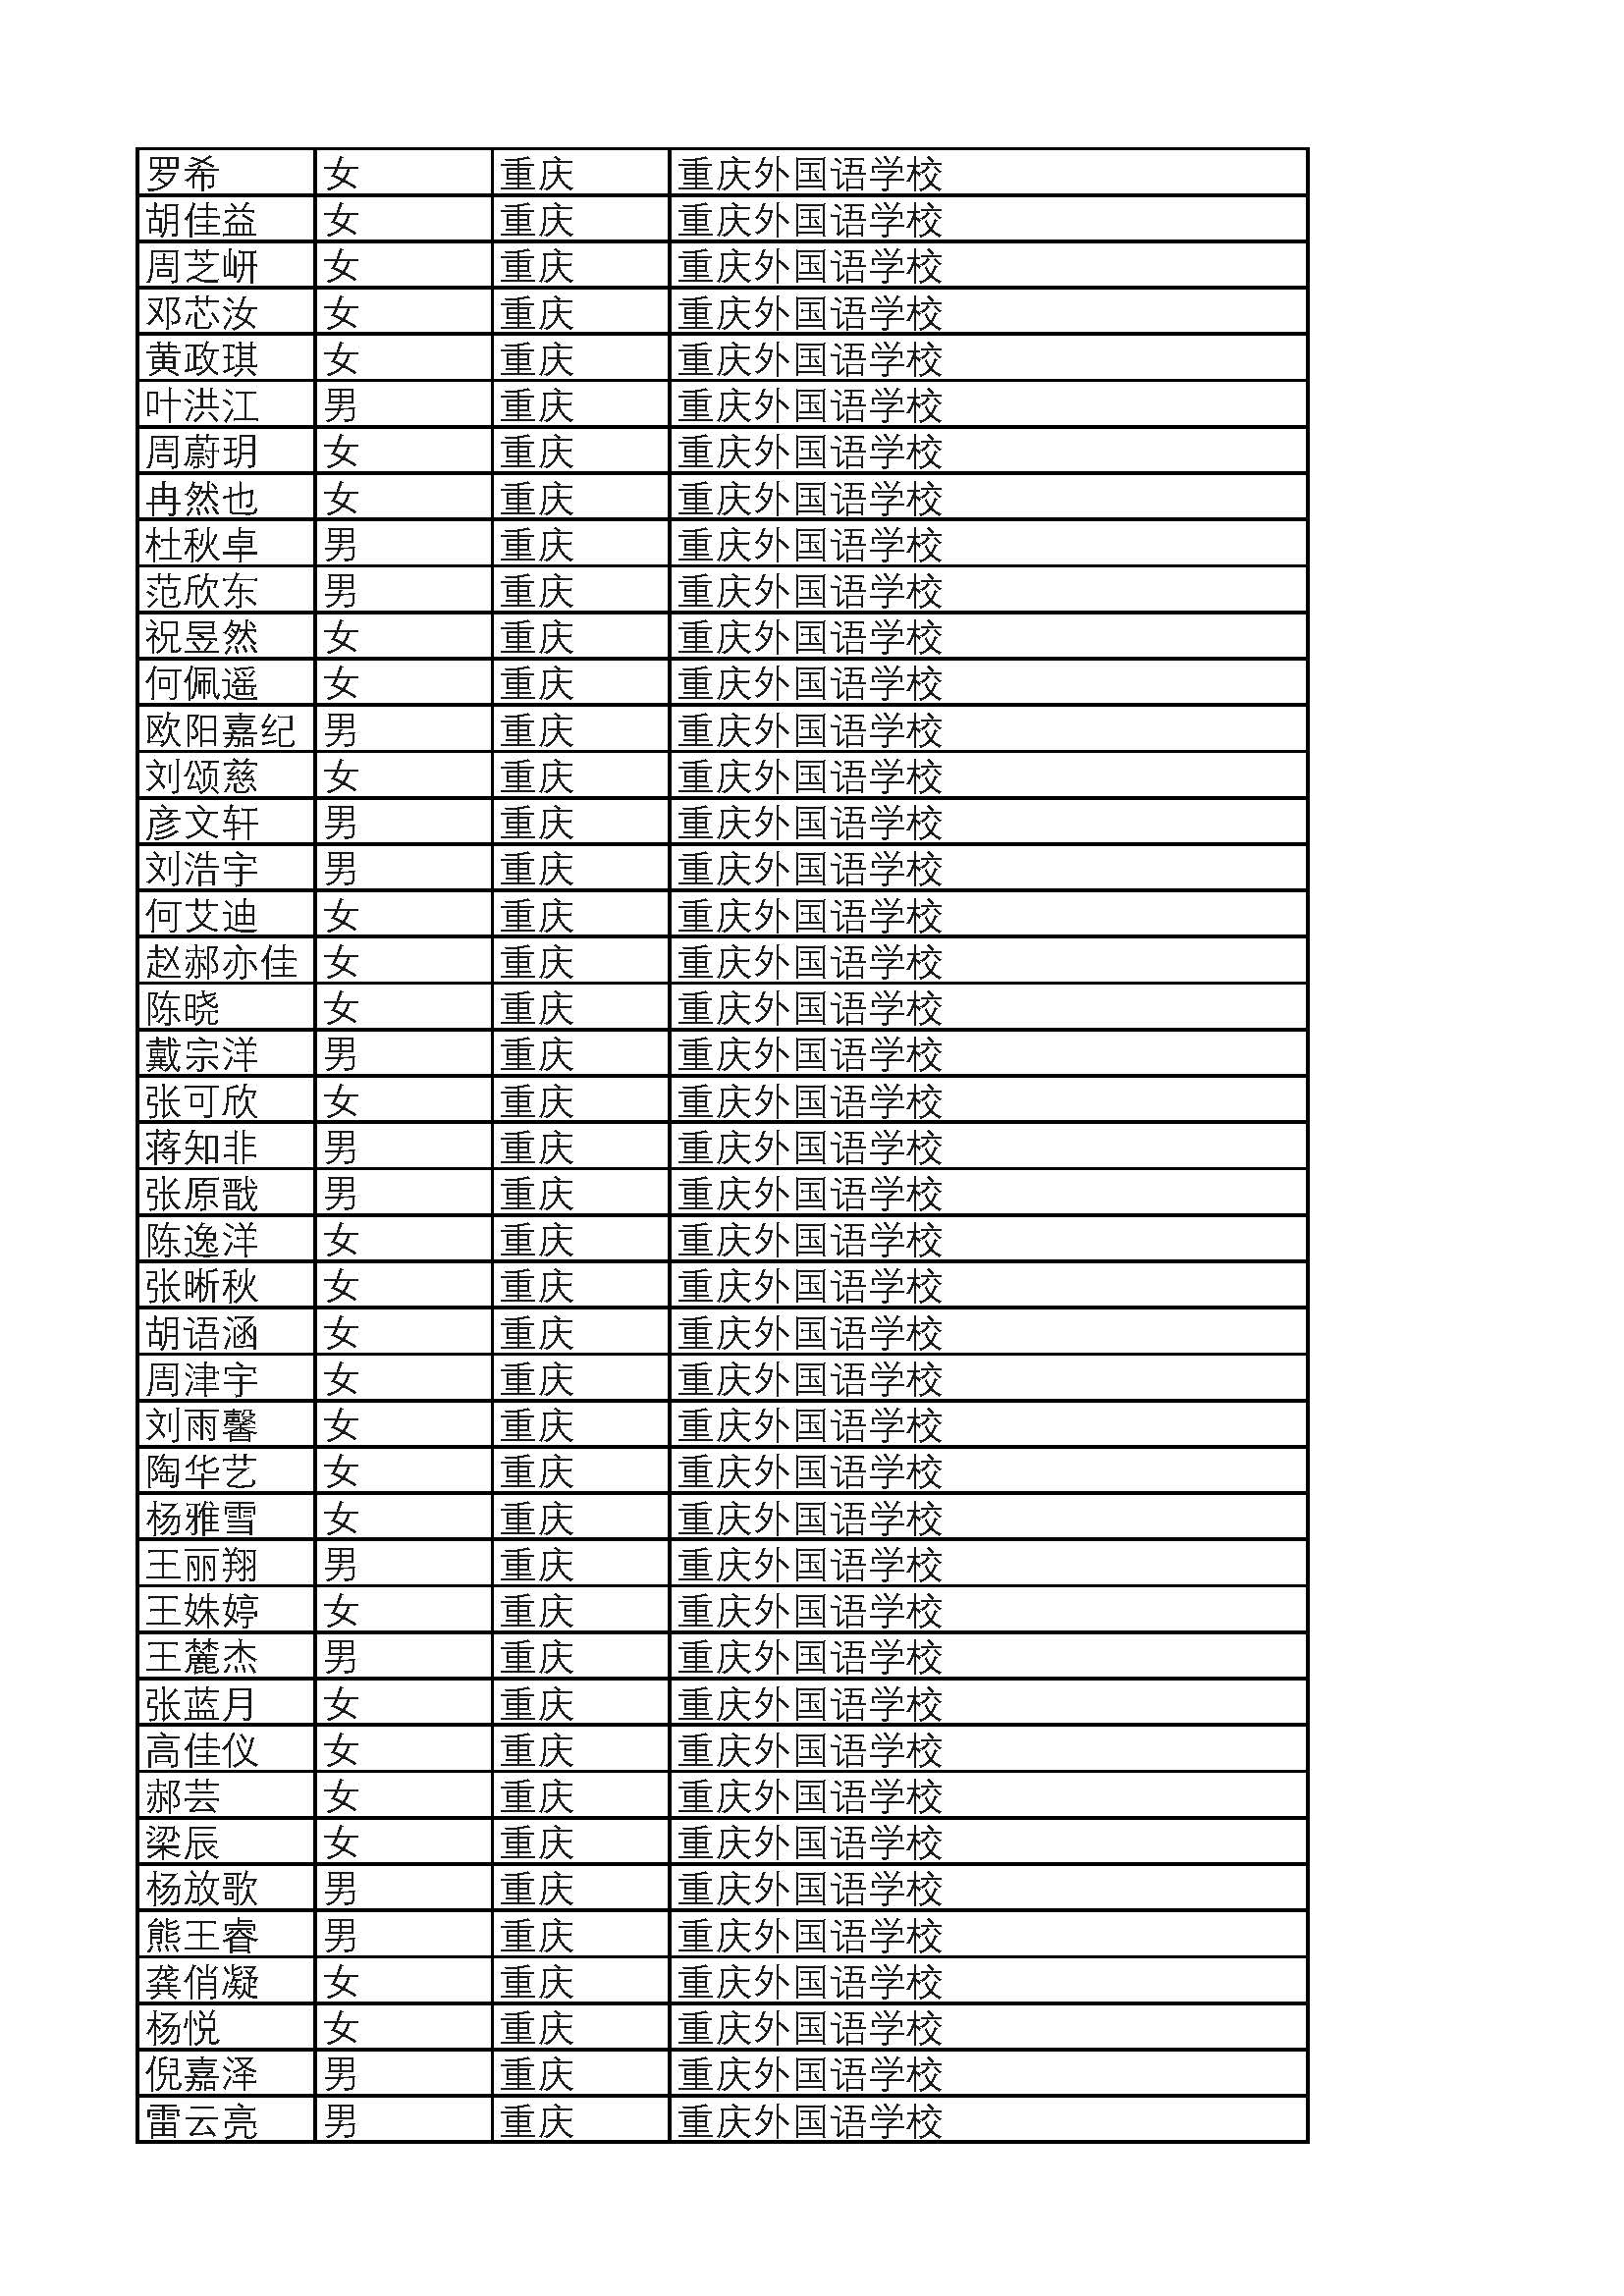 2019年普通高考保送生资格名单(教育部公示) 2